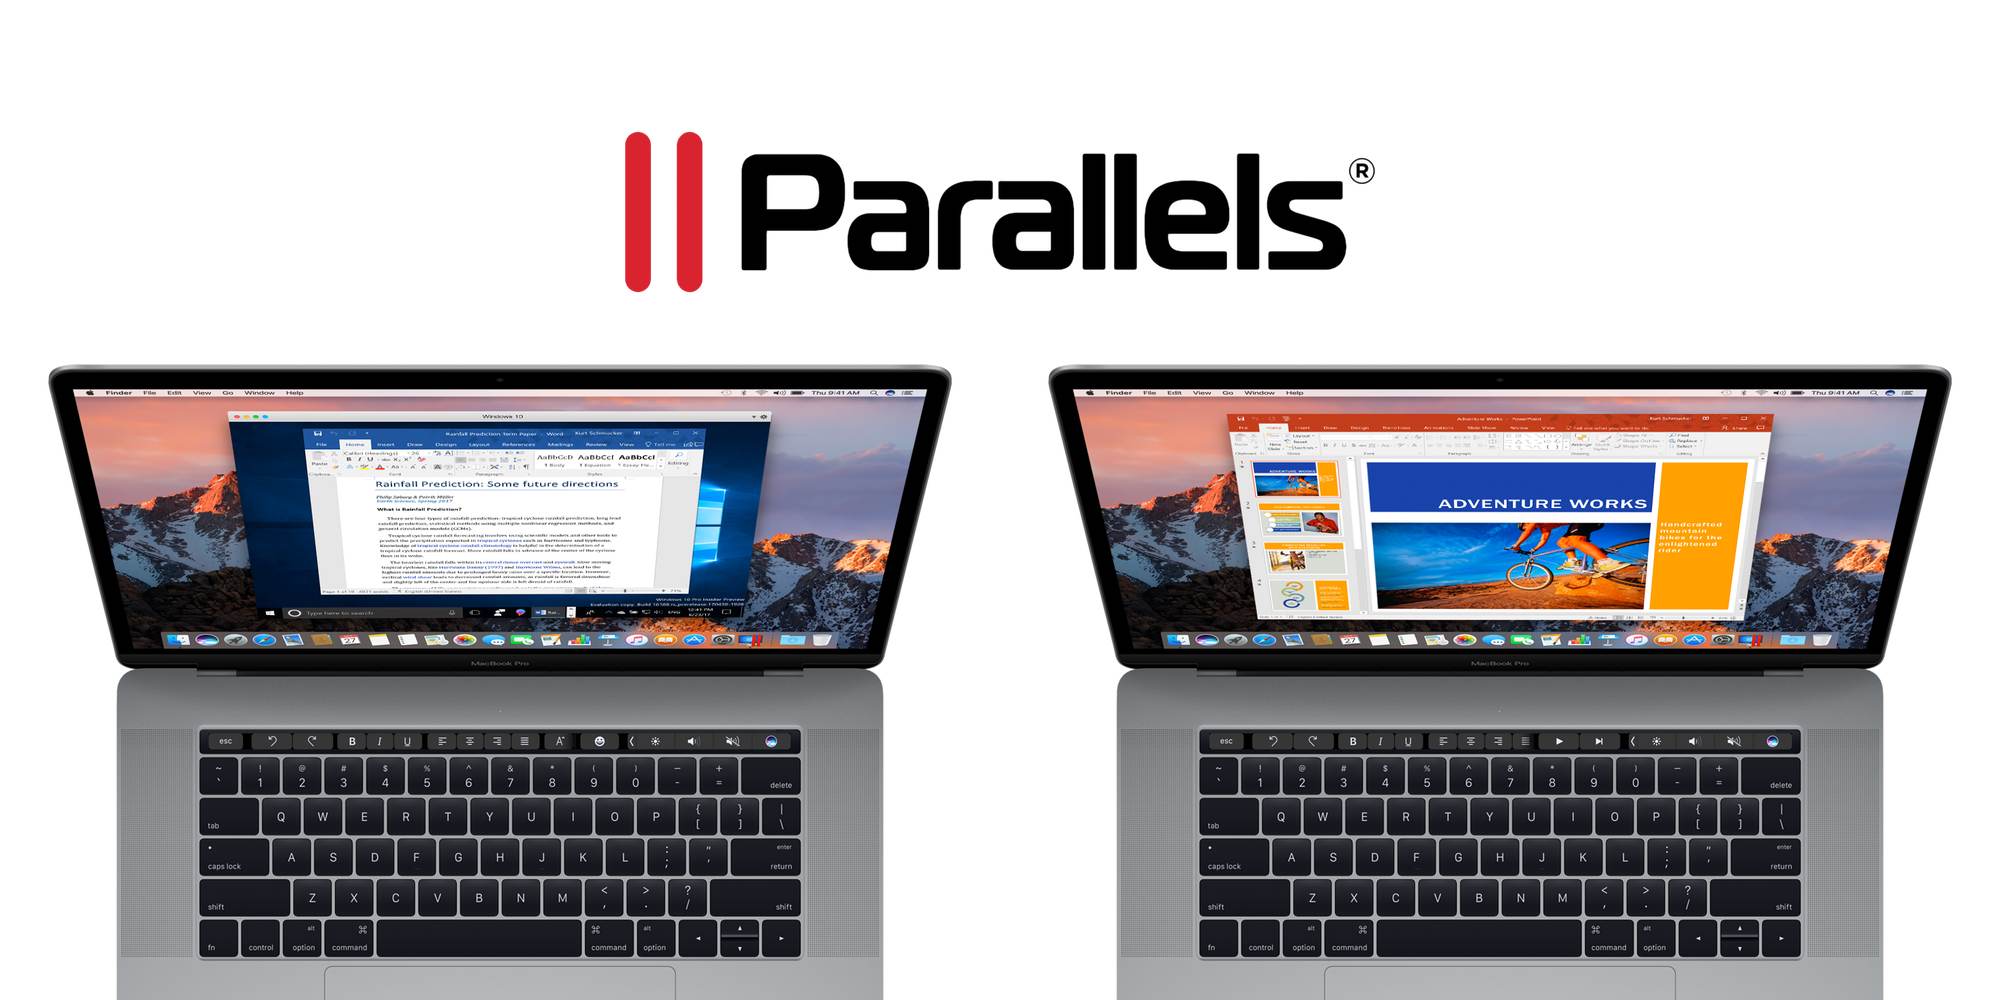 parallels desktop 13 vm